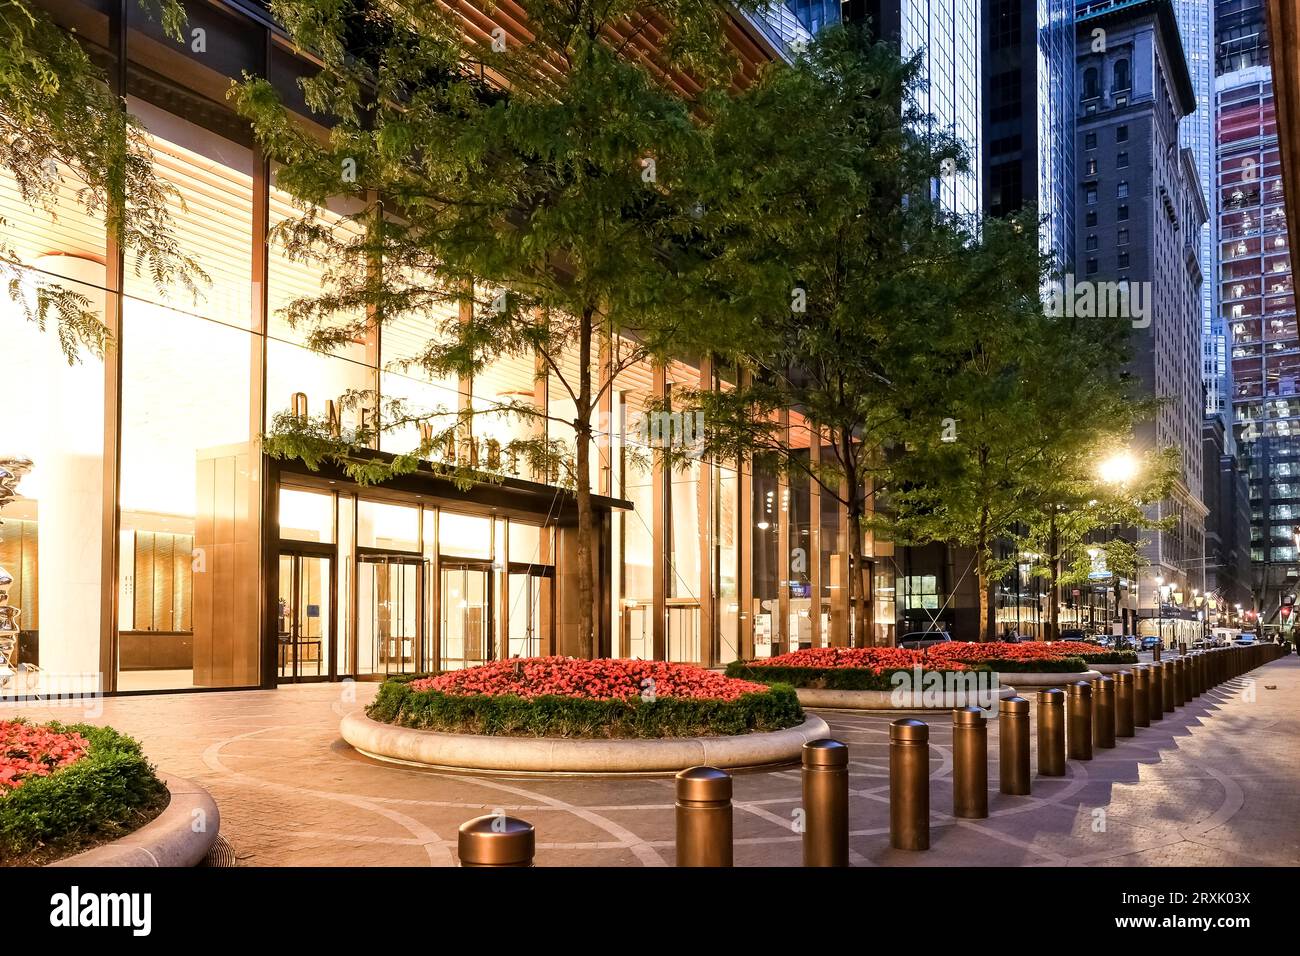 Veduta di Vanderbilt Avenue, una strada principale nel quartiere di New York City a Manhattan che prende il nome da Cornelius Vanderbilt, costruttore del Grand Central Terminal Foto Stock